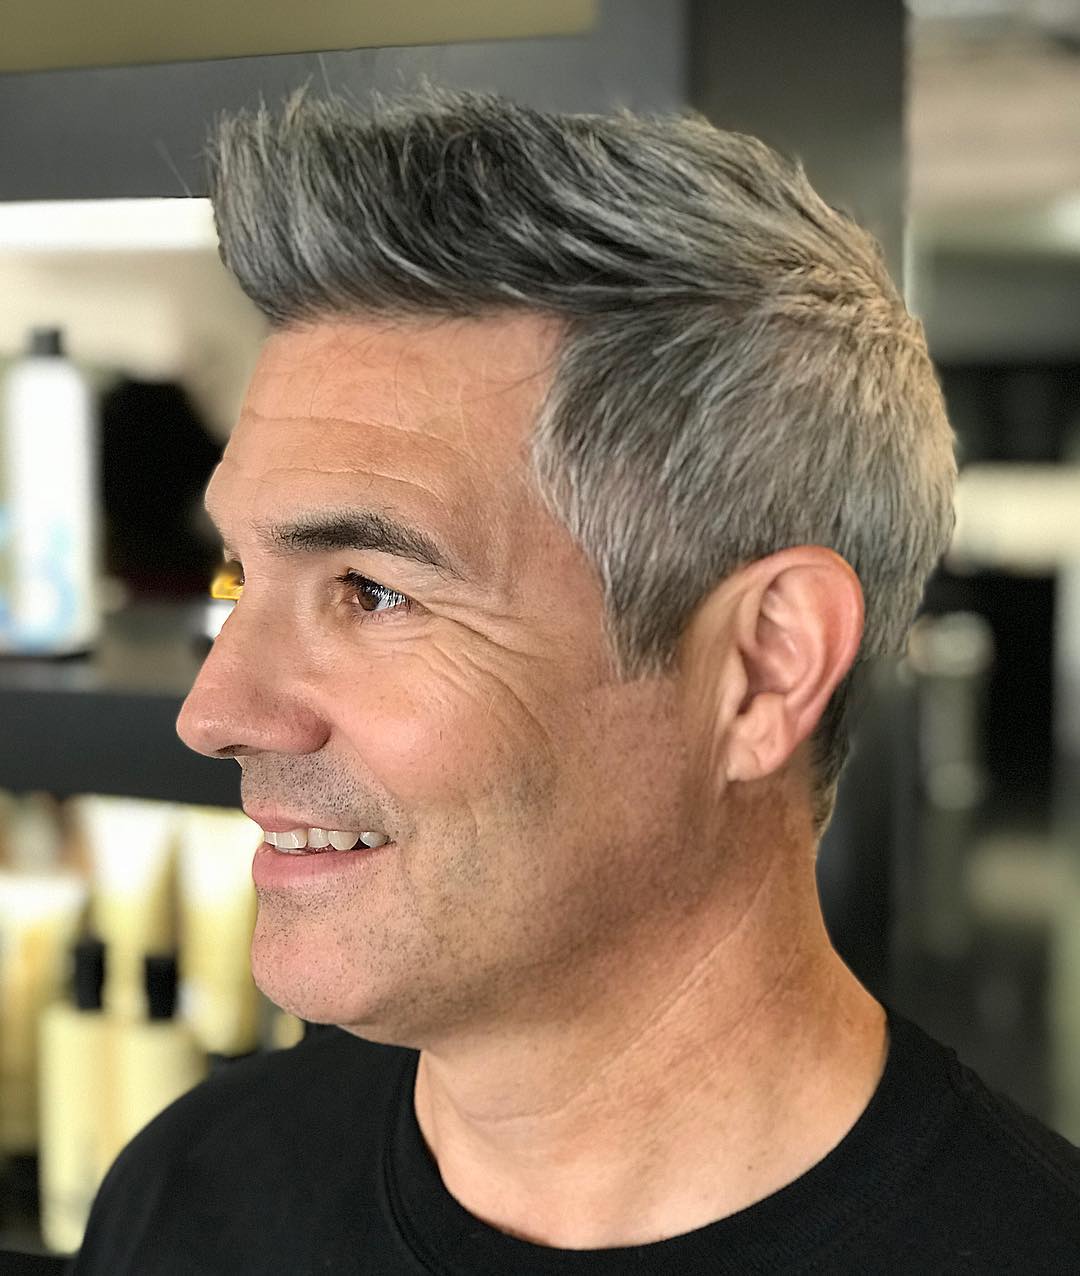 Quiff haircut for older men - 30s 40s